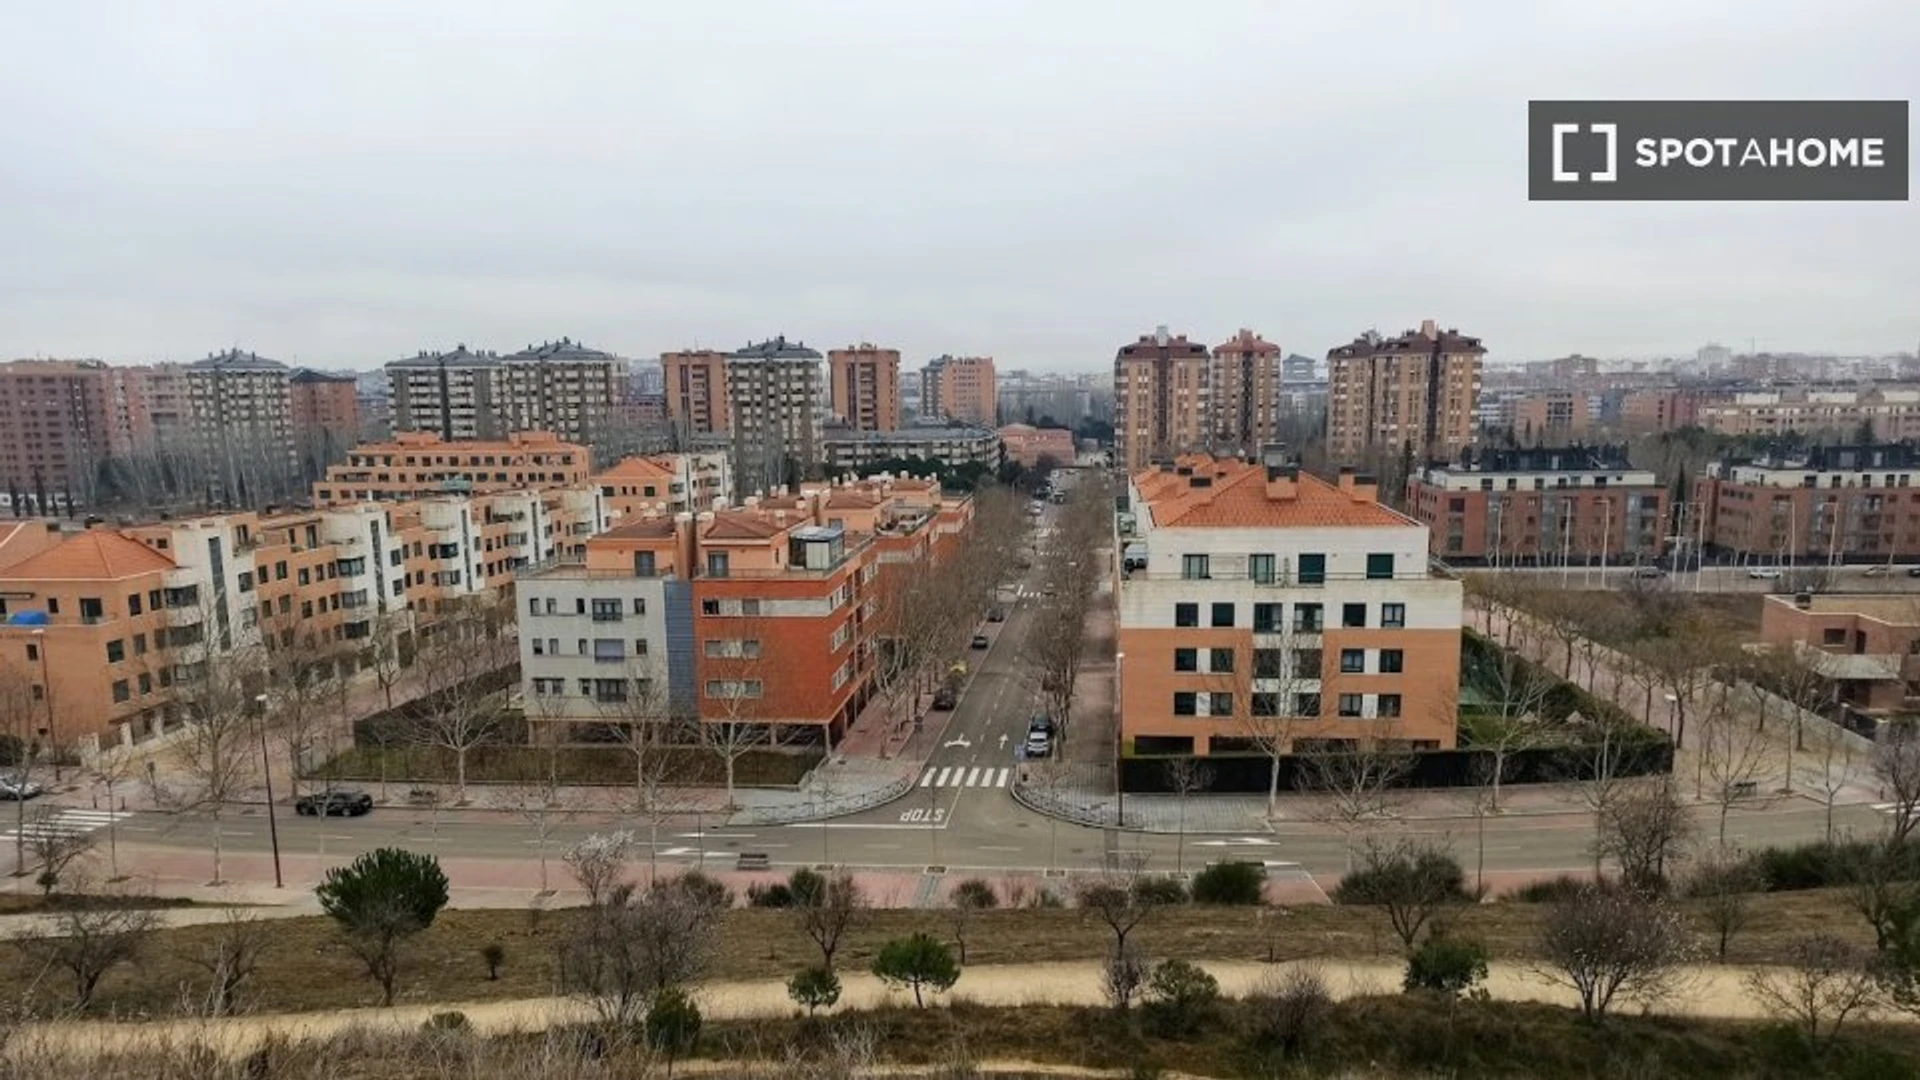 Apartamento totalmente mobilado em Valladolid